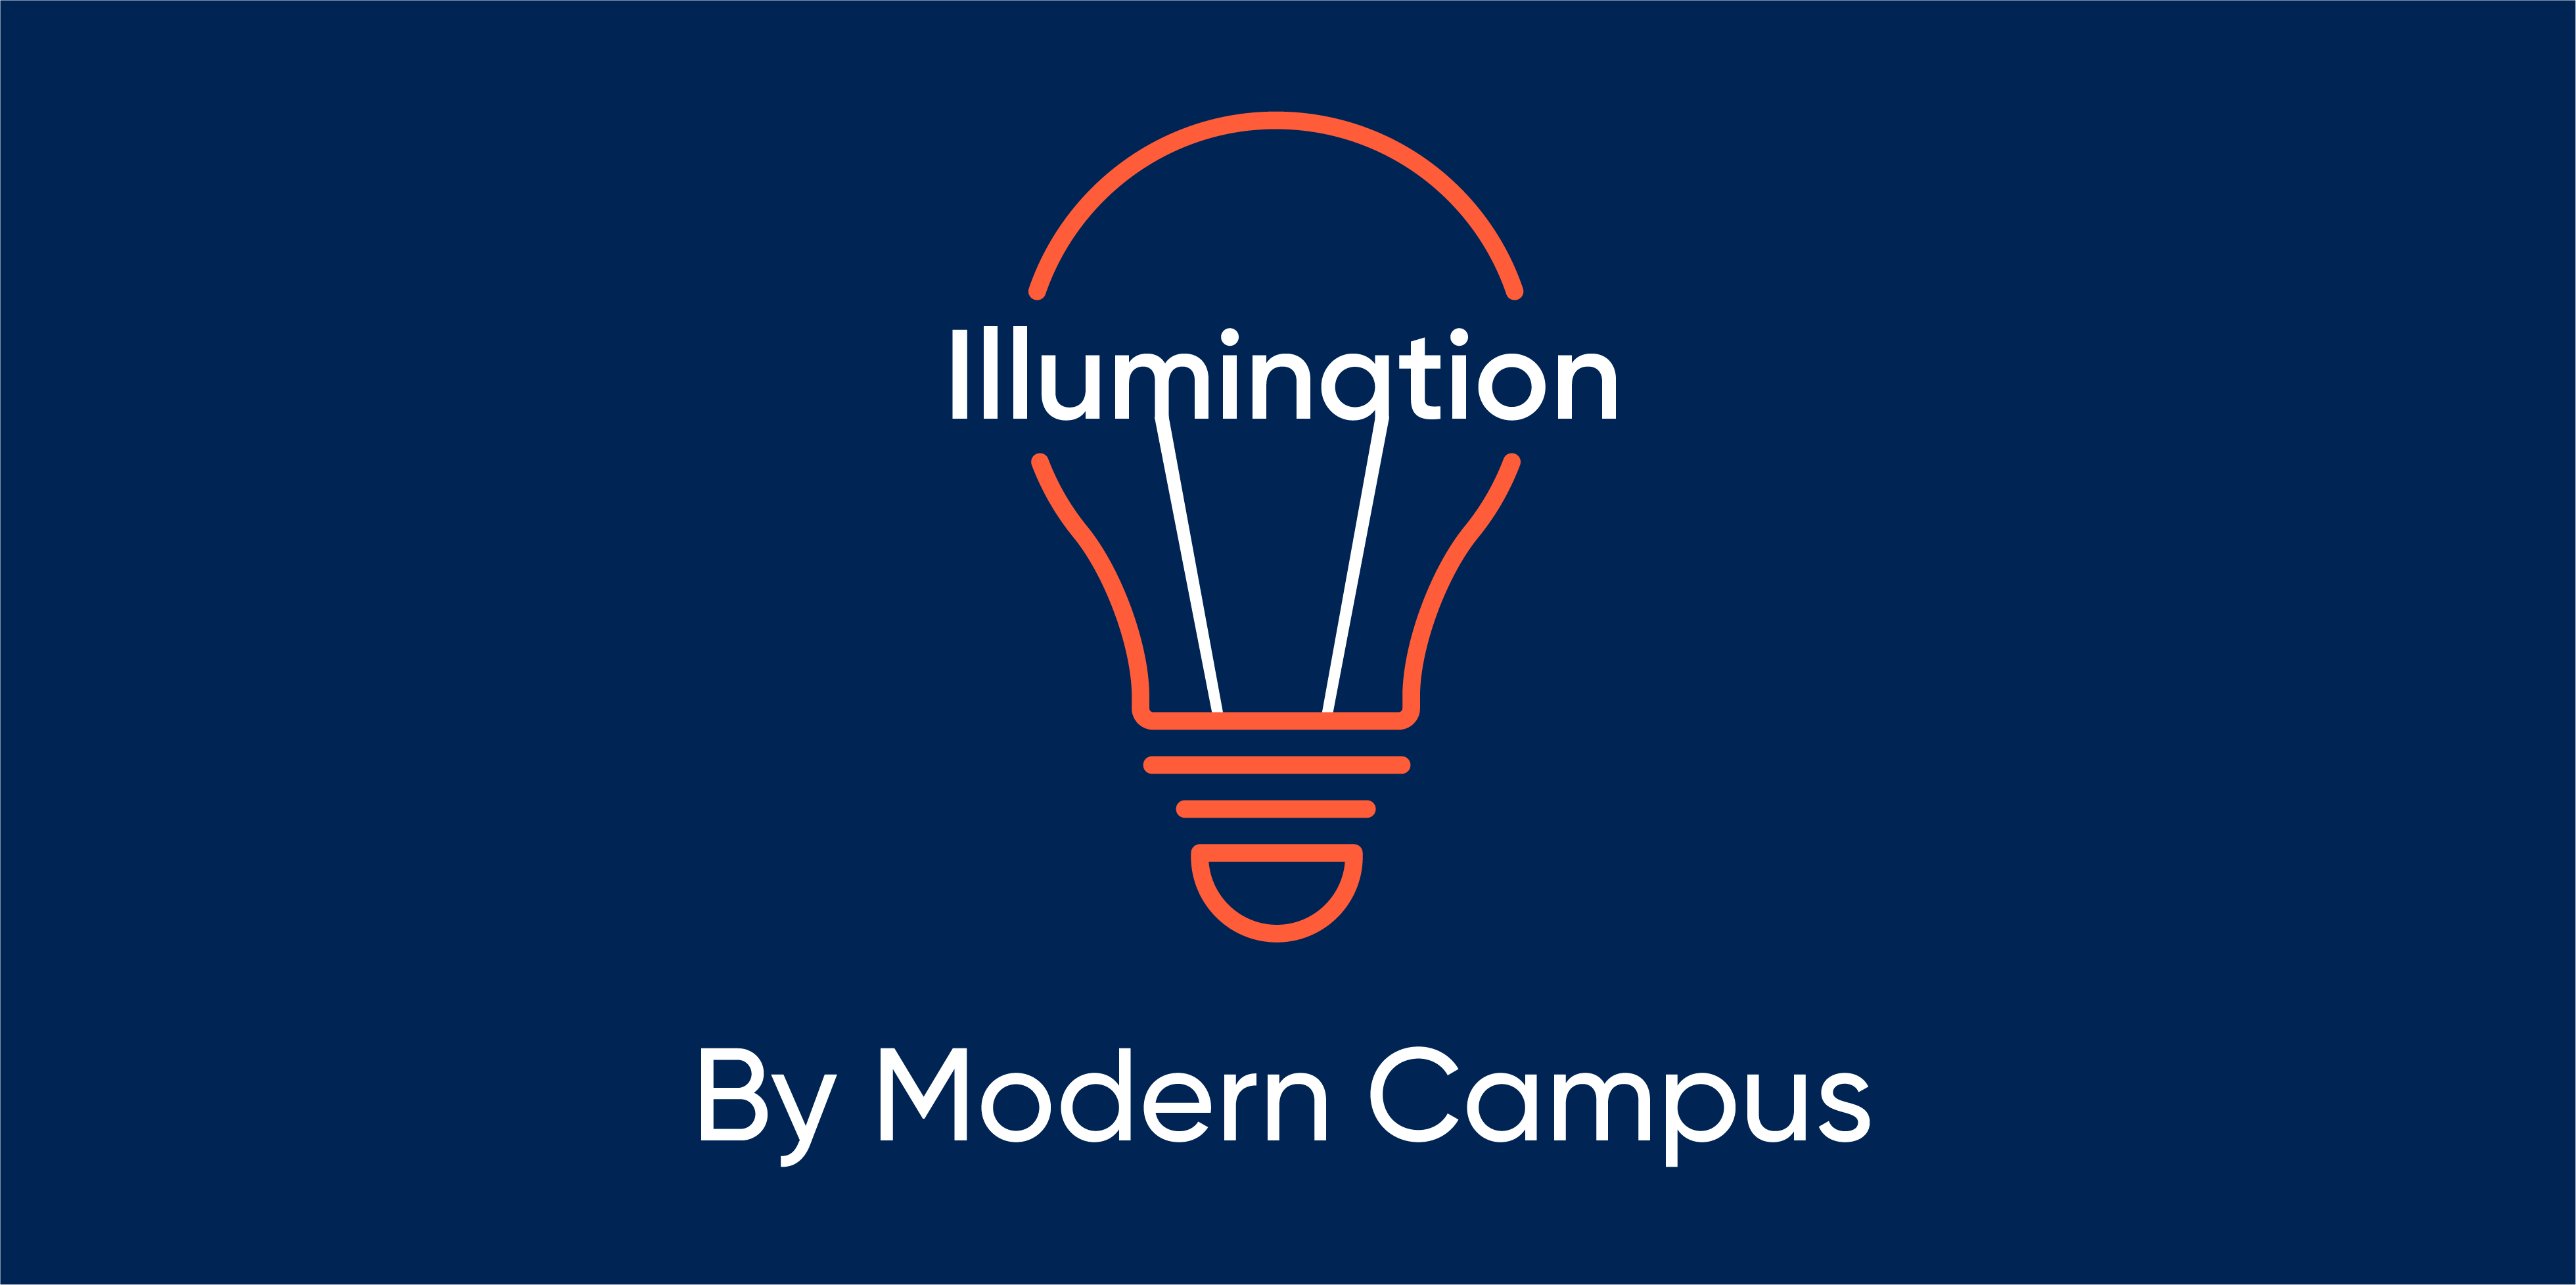 Episode 82: Illumination by Modern Campus